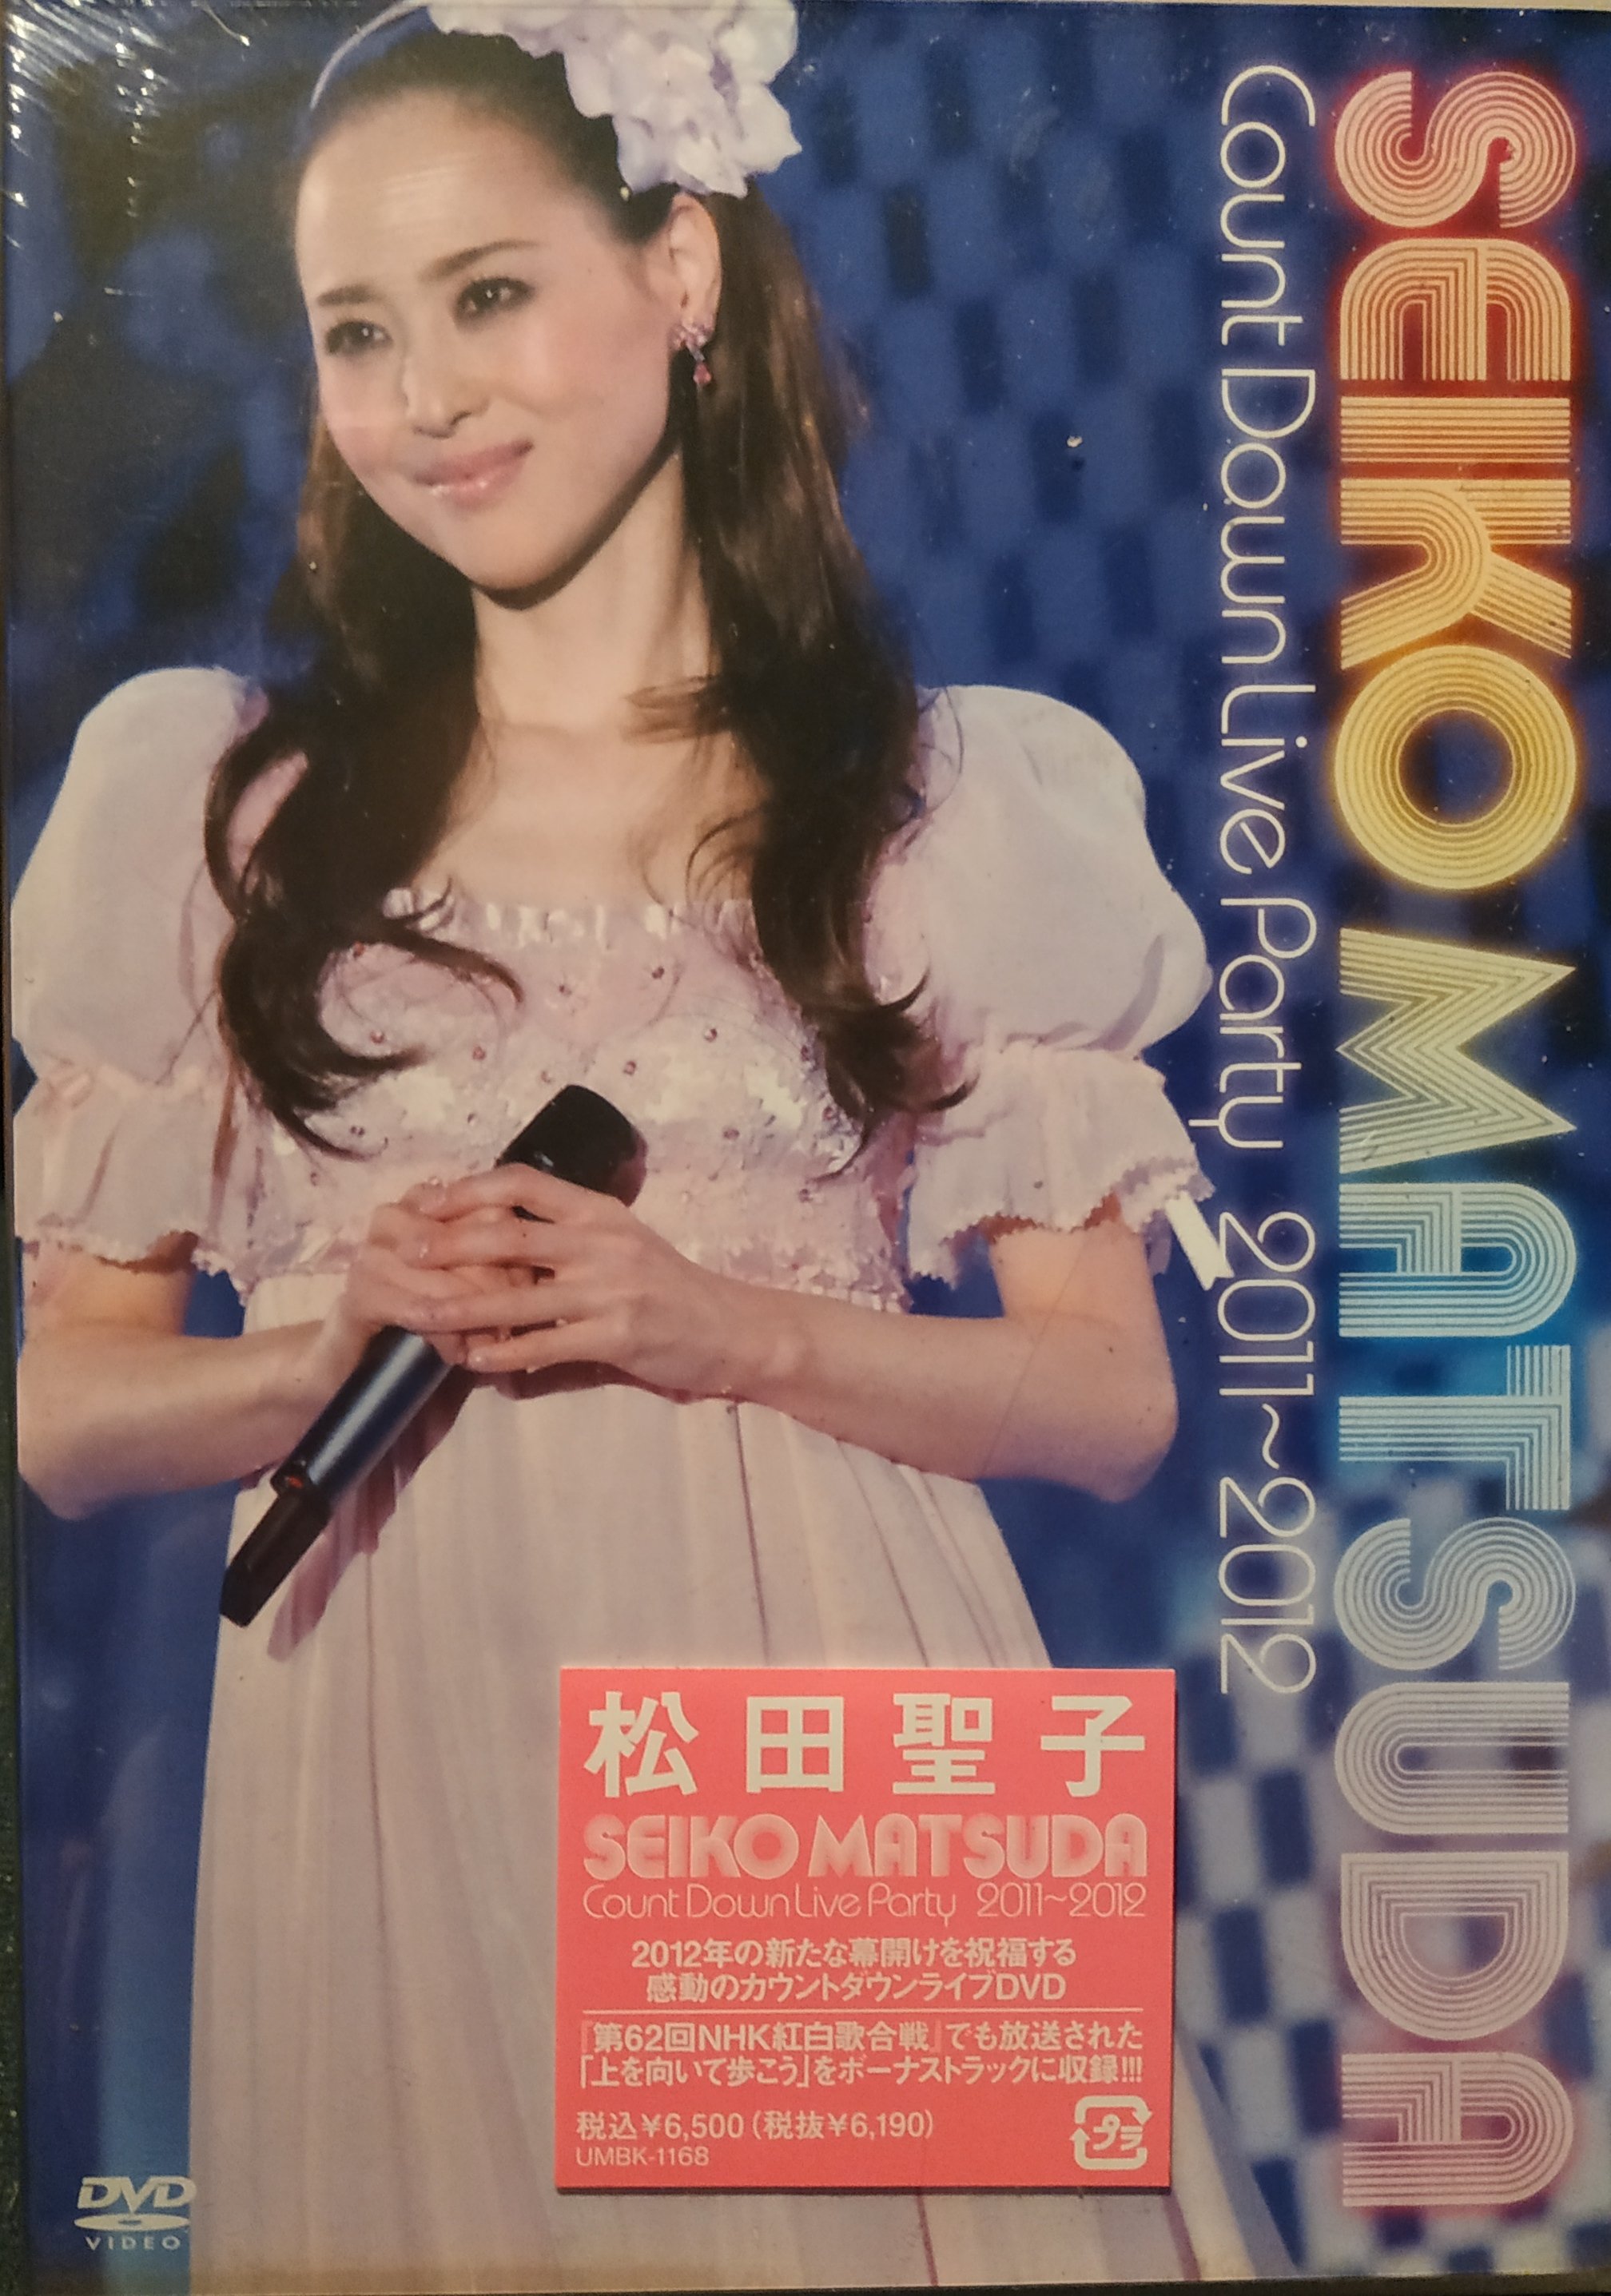 ネット店松田聖子 カウントダウン 2010-2011 DVD 初回限定盤 神田沙也加 ミュージック